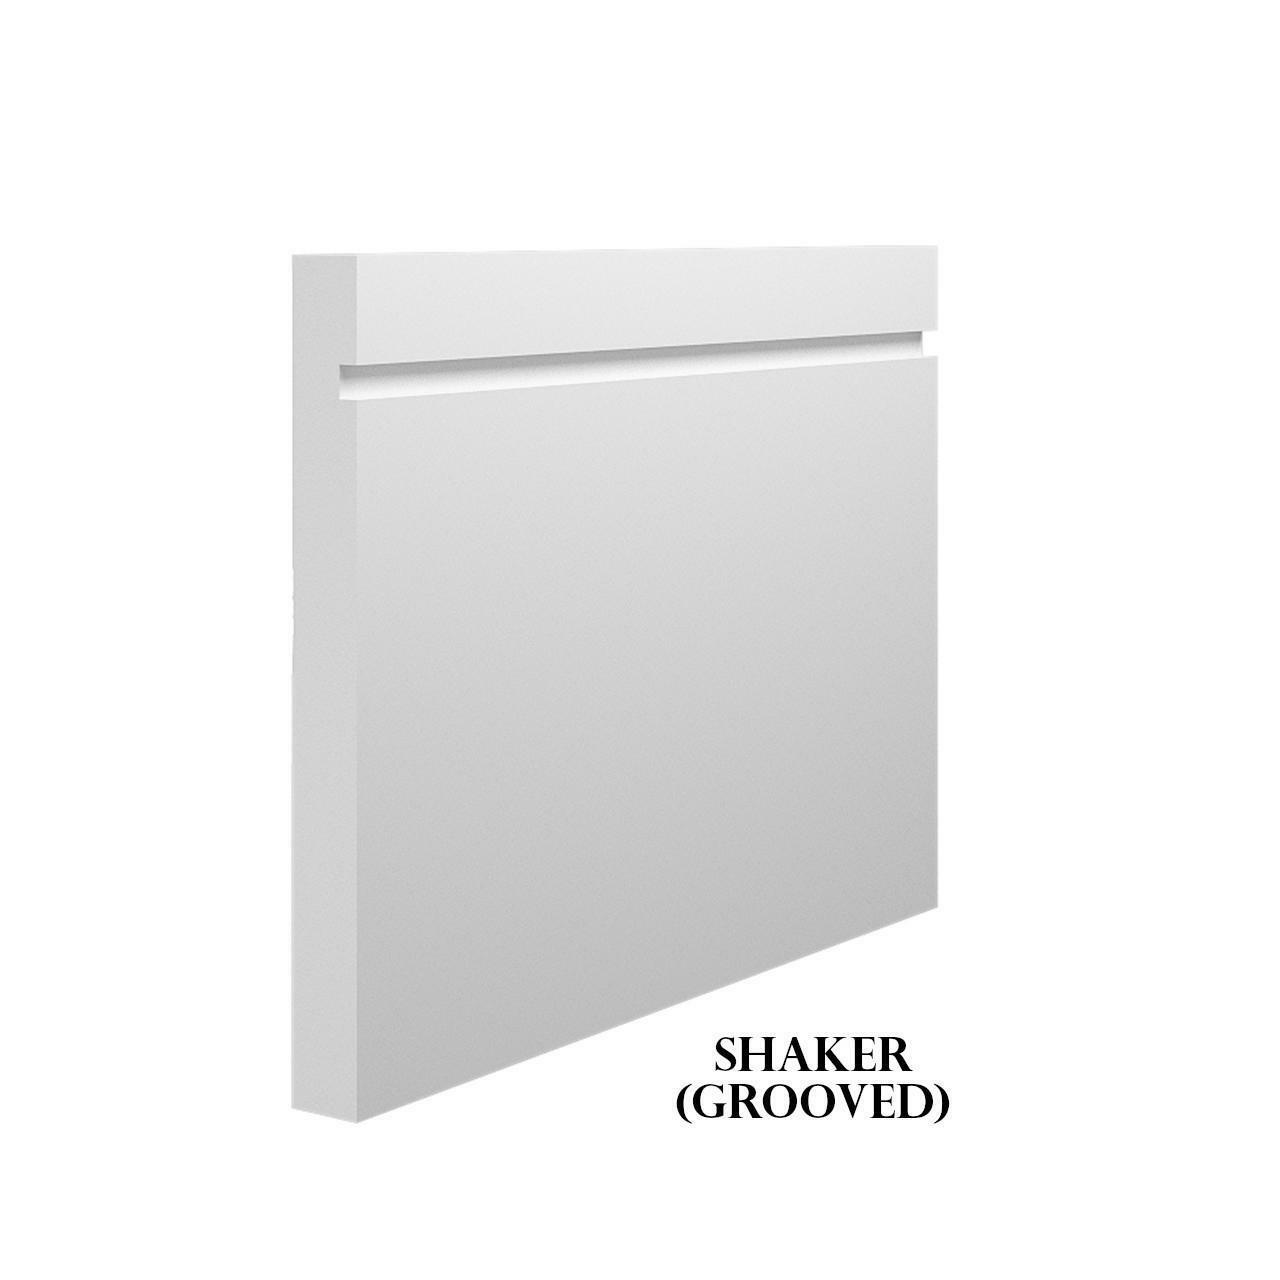 Shaker (Grooved) - White Primed MDF Skirting & Architrave